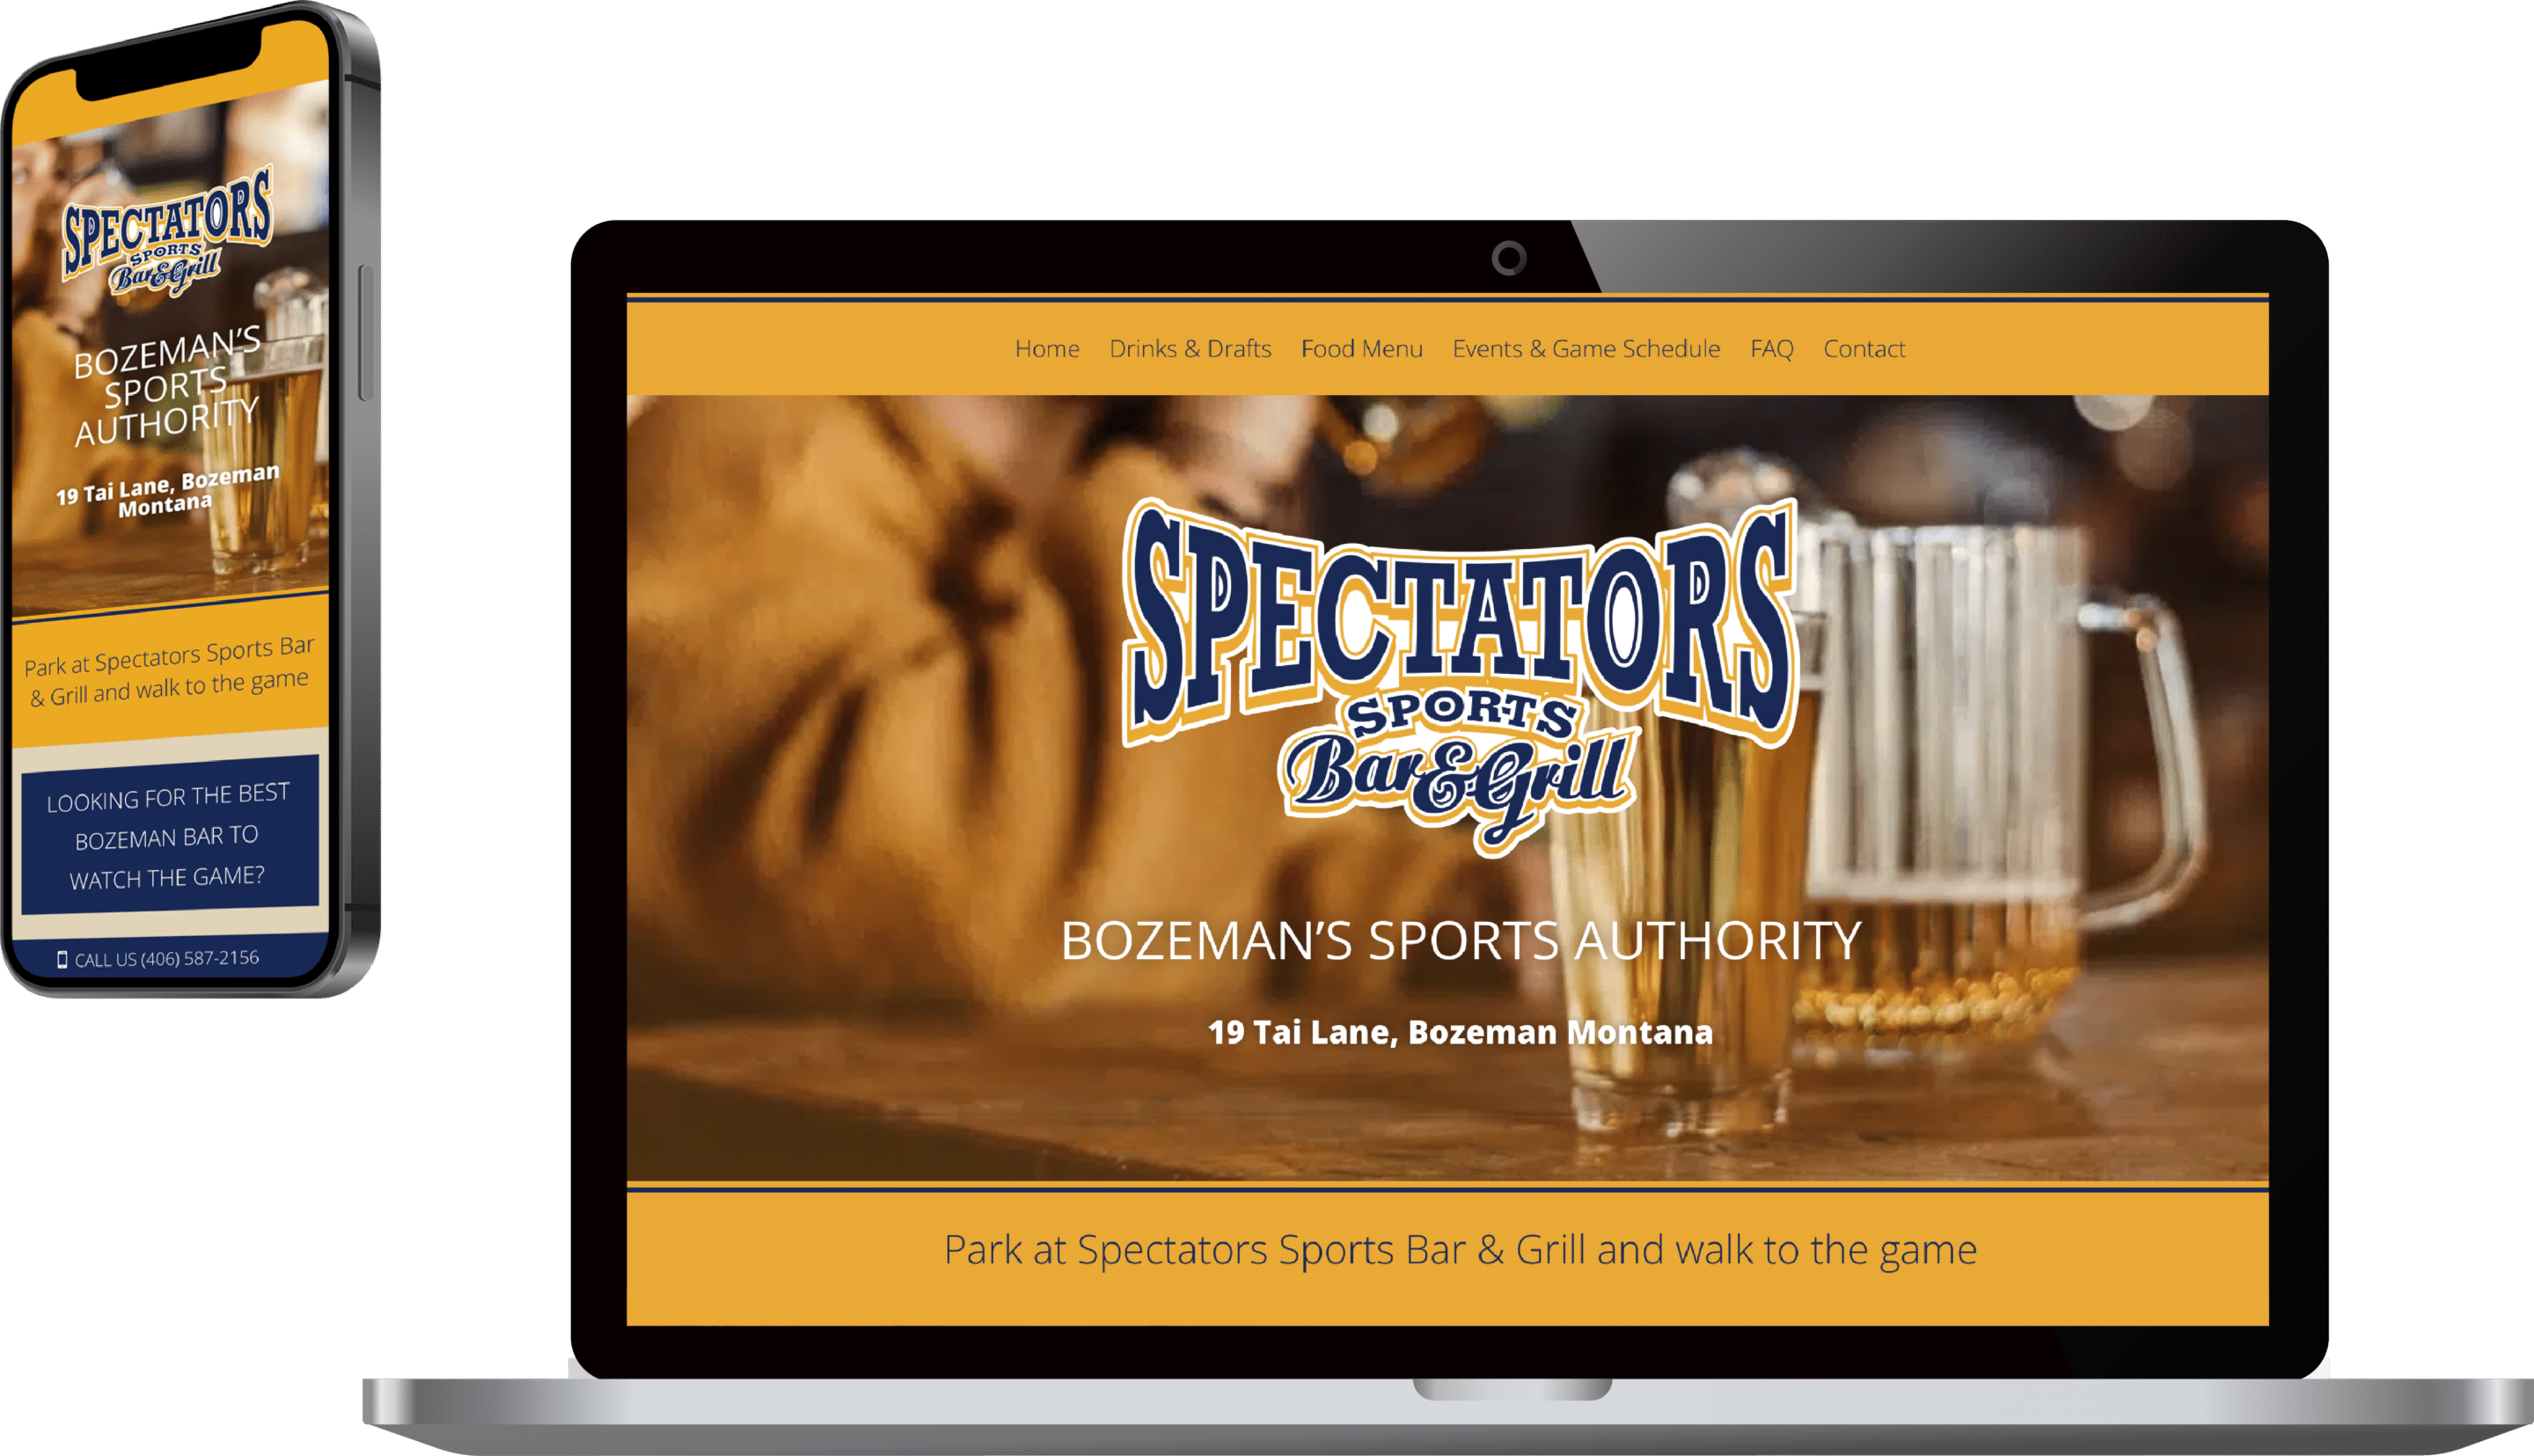 Spectators website shown on desktop and mobile